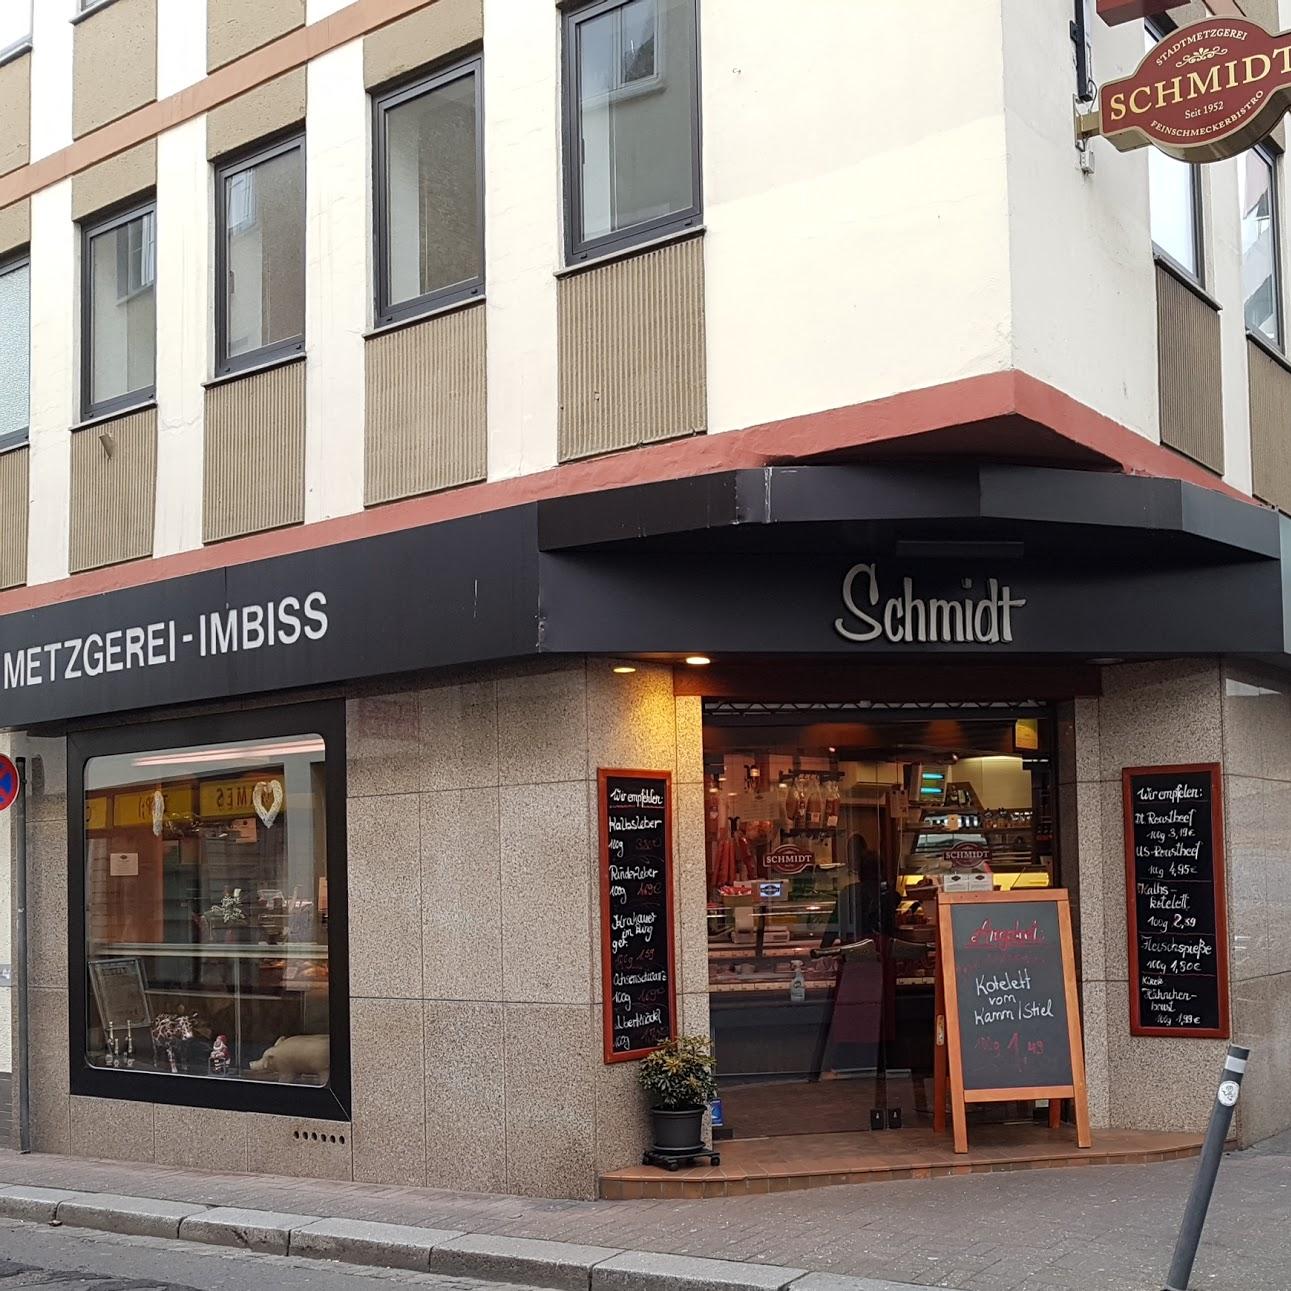 Restaurant "Metzgerei & Bistro Schmidt Inh. Kurt Beuschel" in Mainz